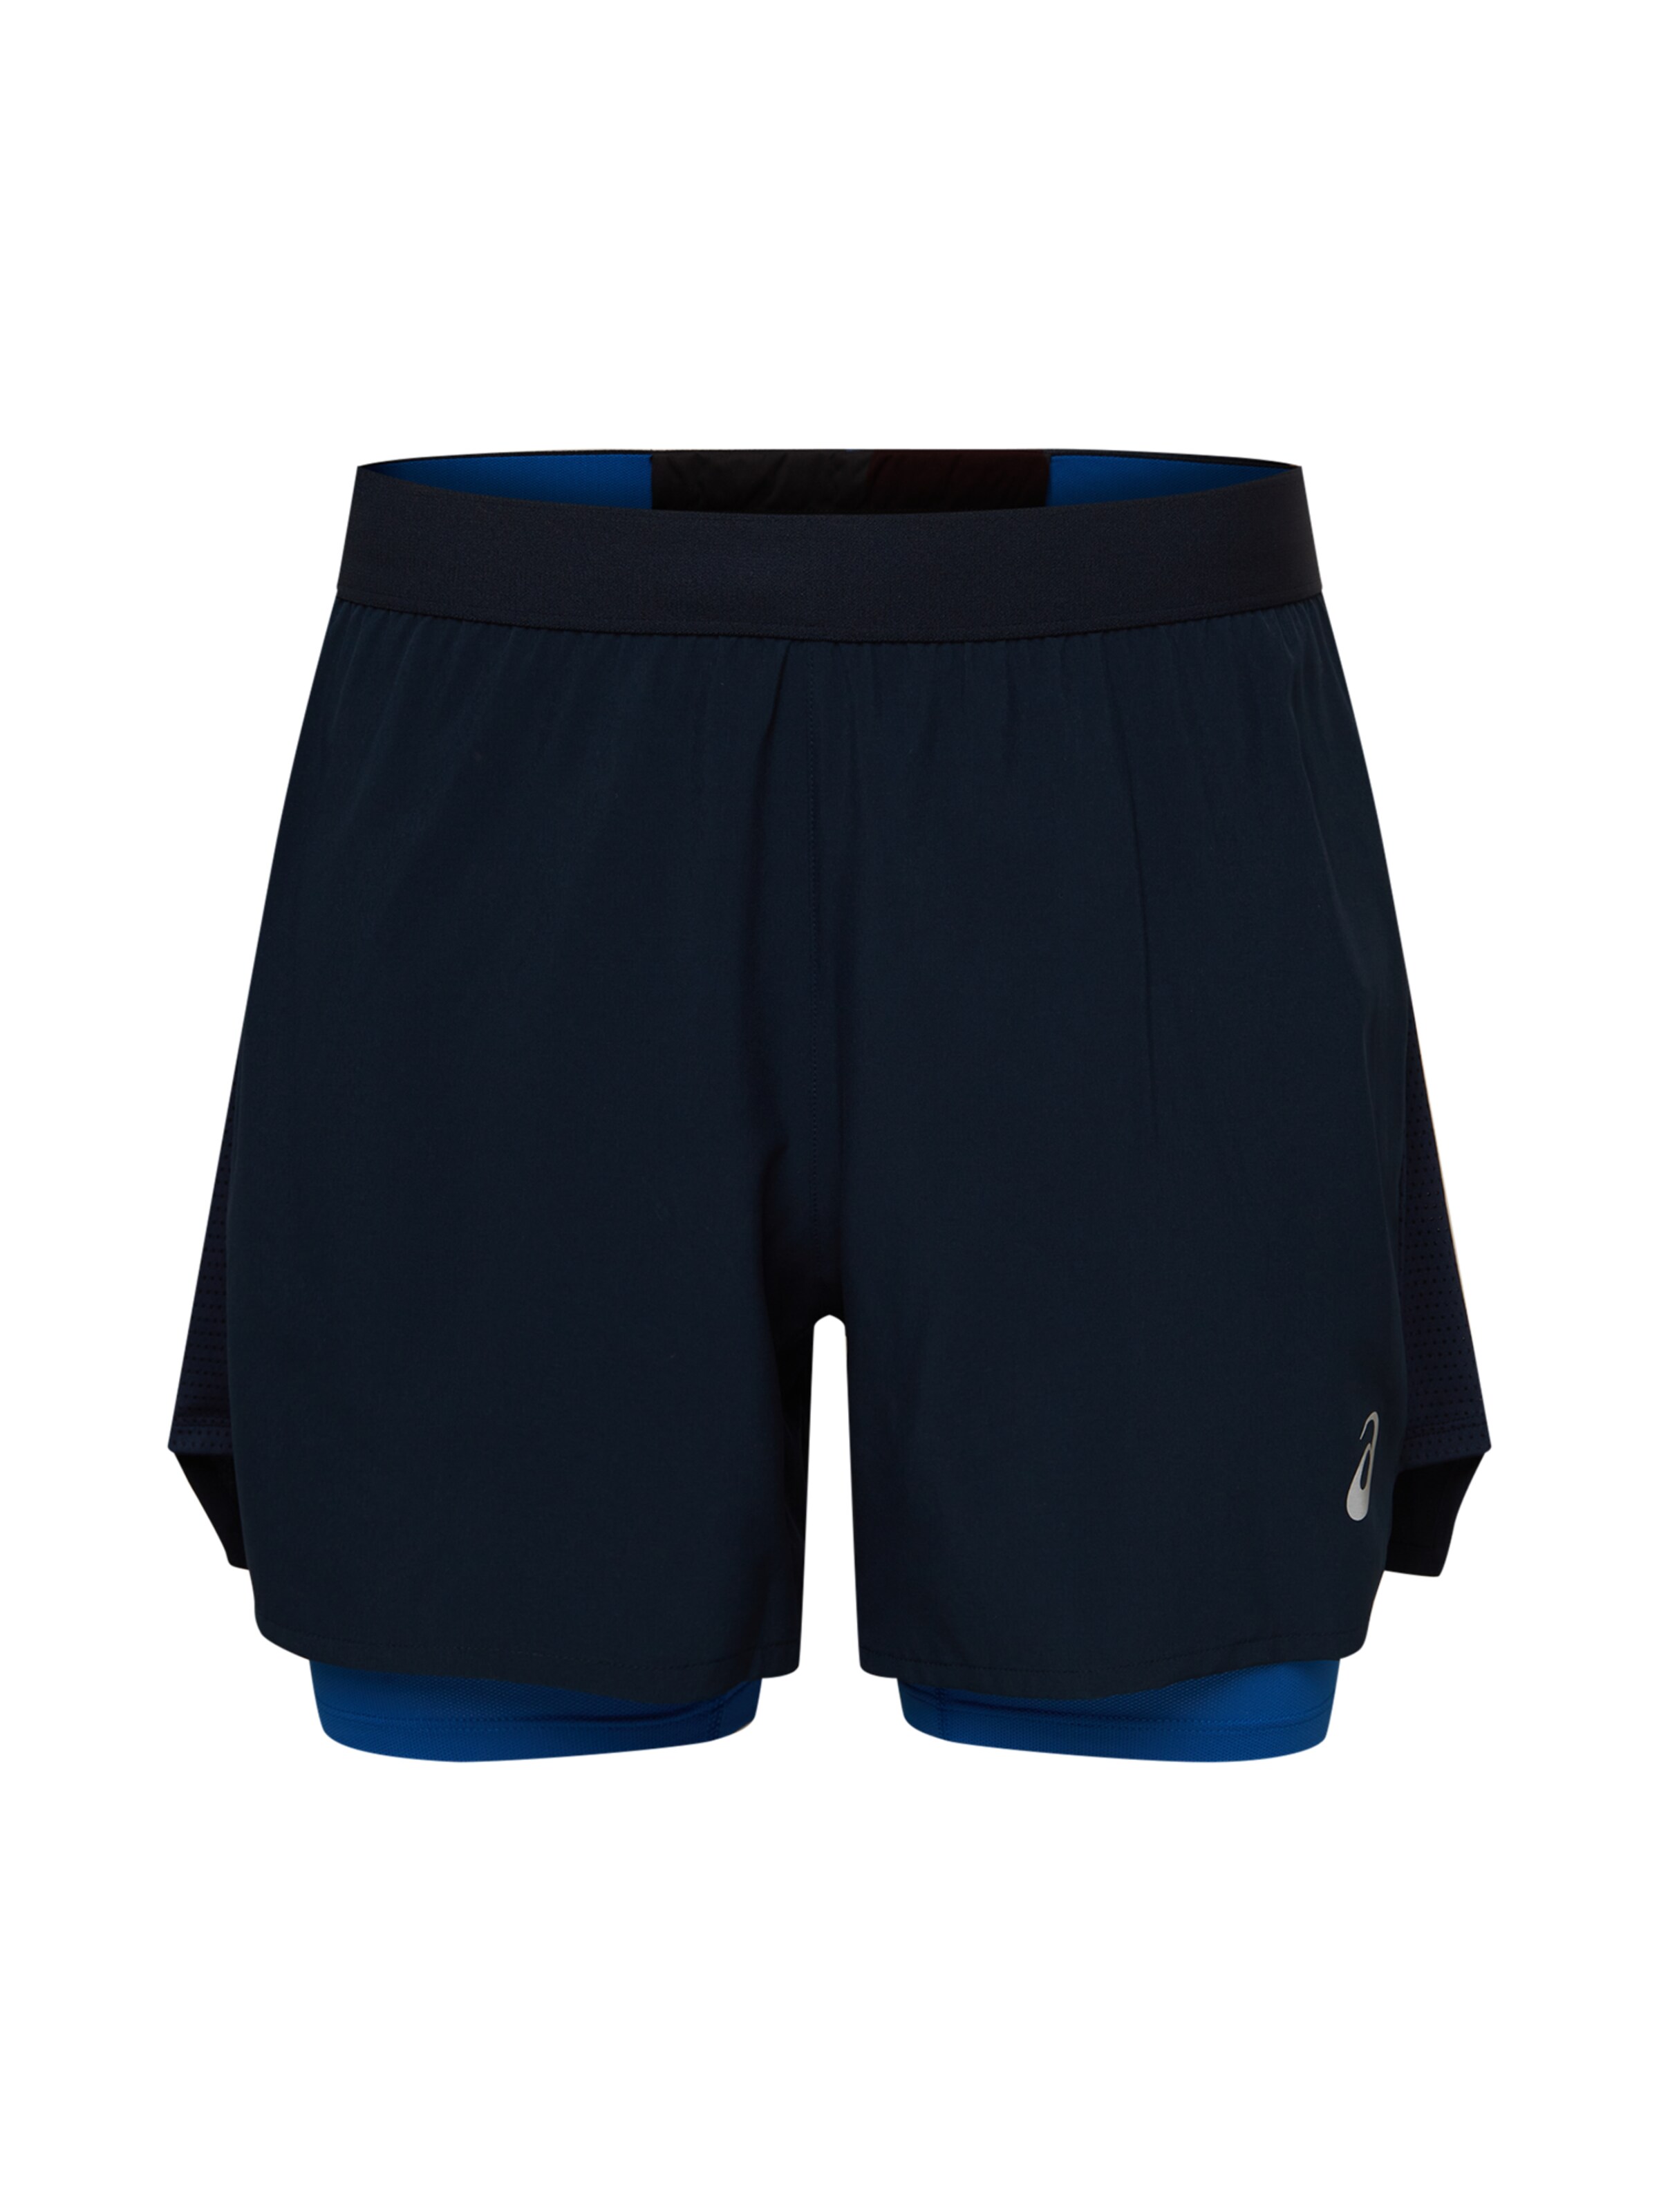 Tipi di sport Uomo ASICS Pantaloni sportivi ROAD 2-N-1 in Blu, Blu Cobalto 